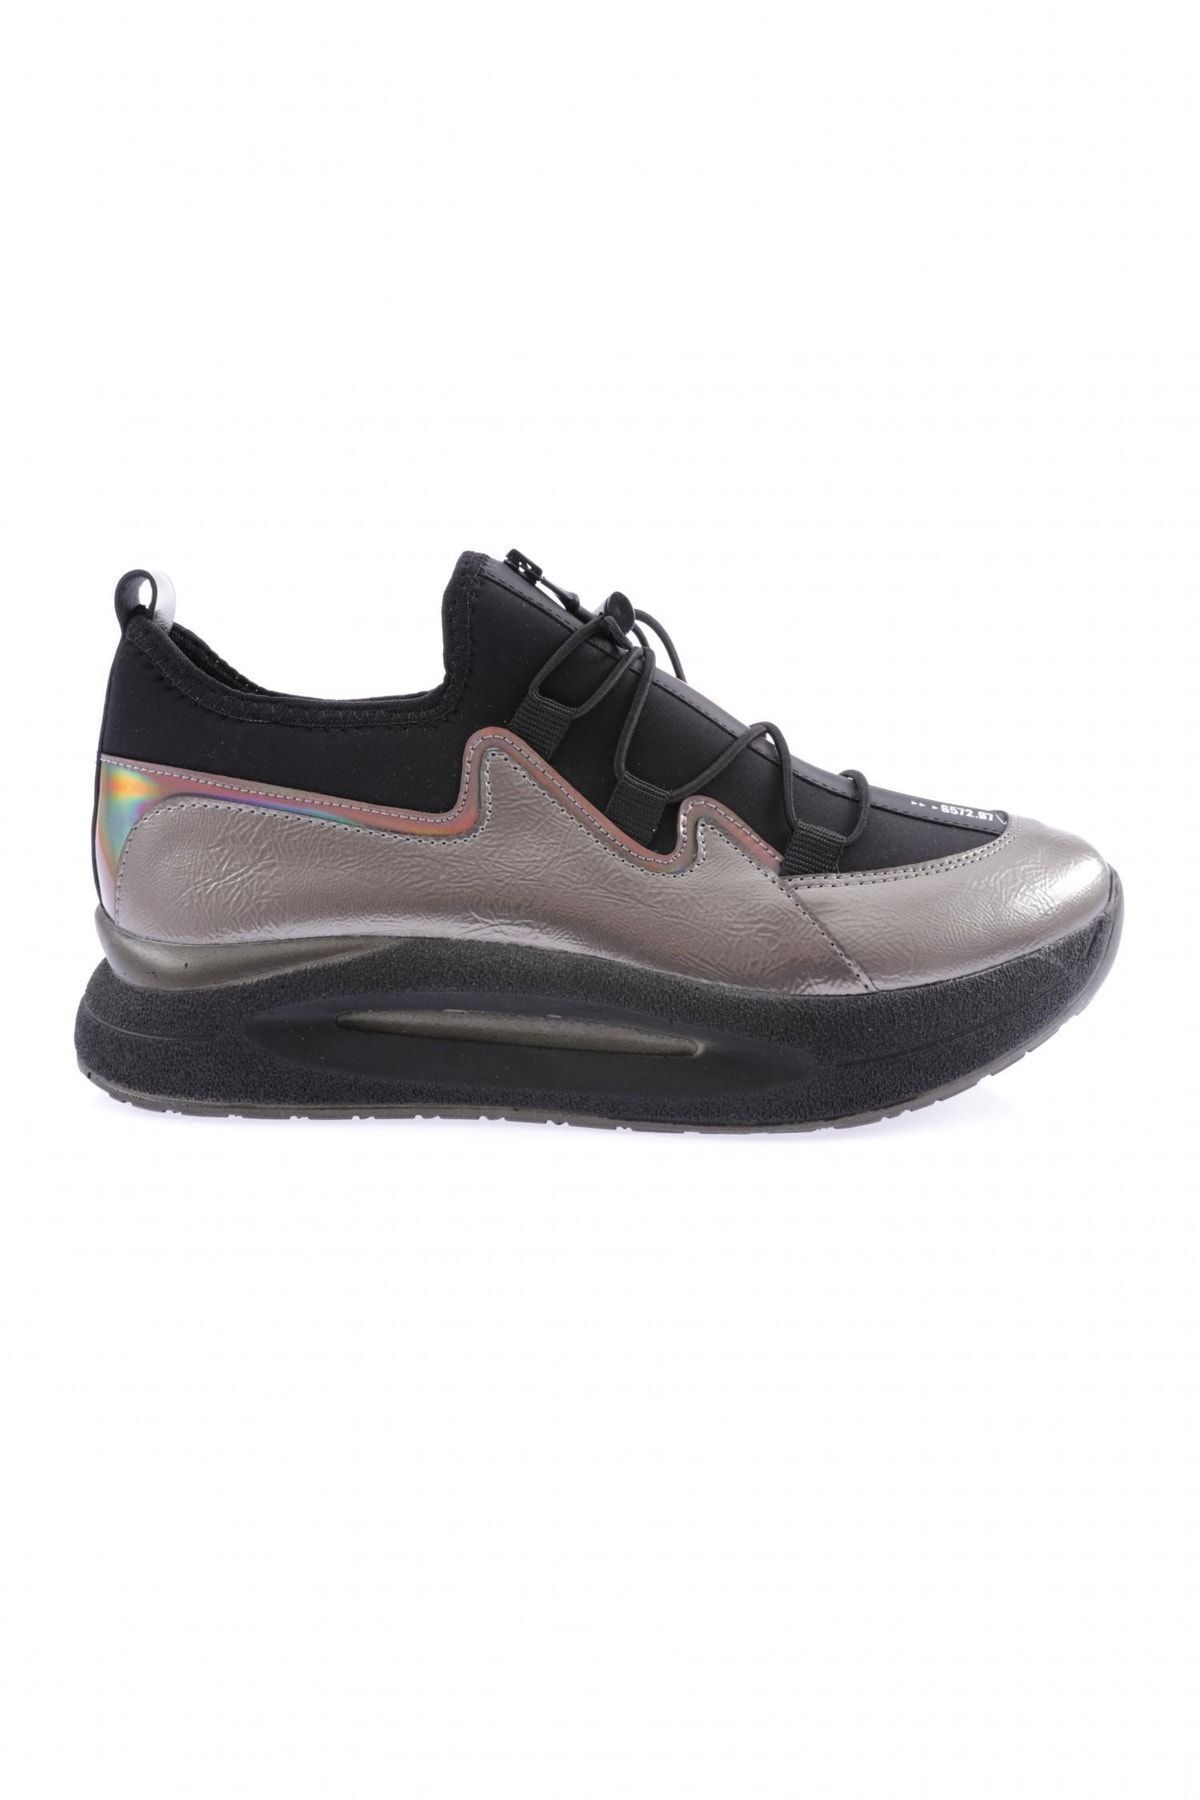 Dgn 832-23y Kadın Kalın Taban Yazi Detaylı Lastik Ipli Sneakers Ayakkabı Platin